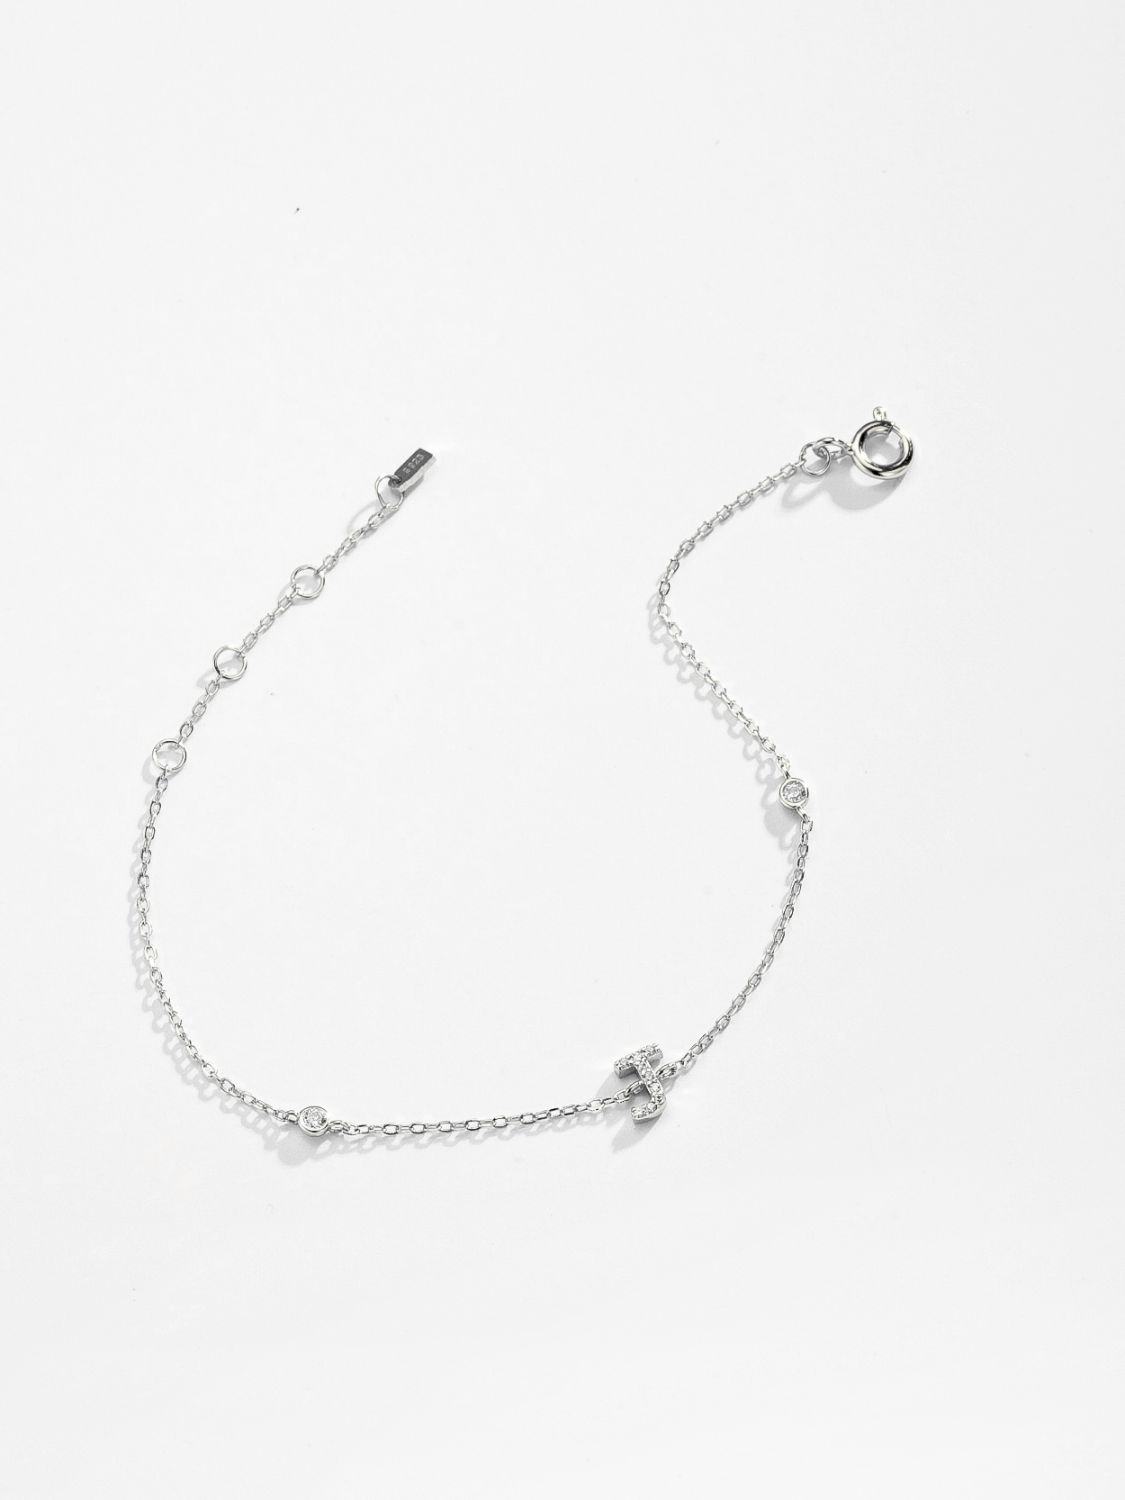 Zircon 925 Sterling Silver Bracelet - Women’s Jewelry - Bracelets - 24 - 2024